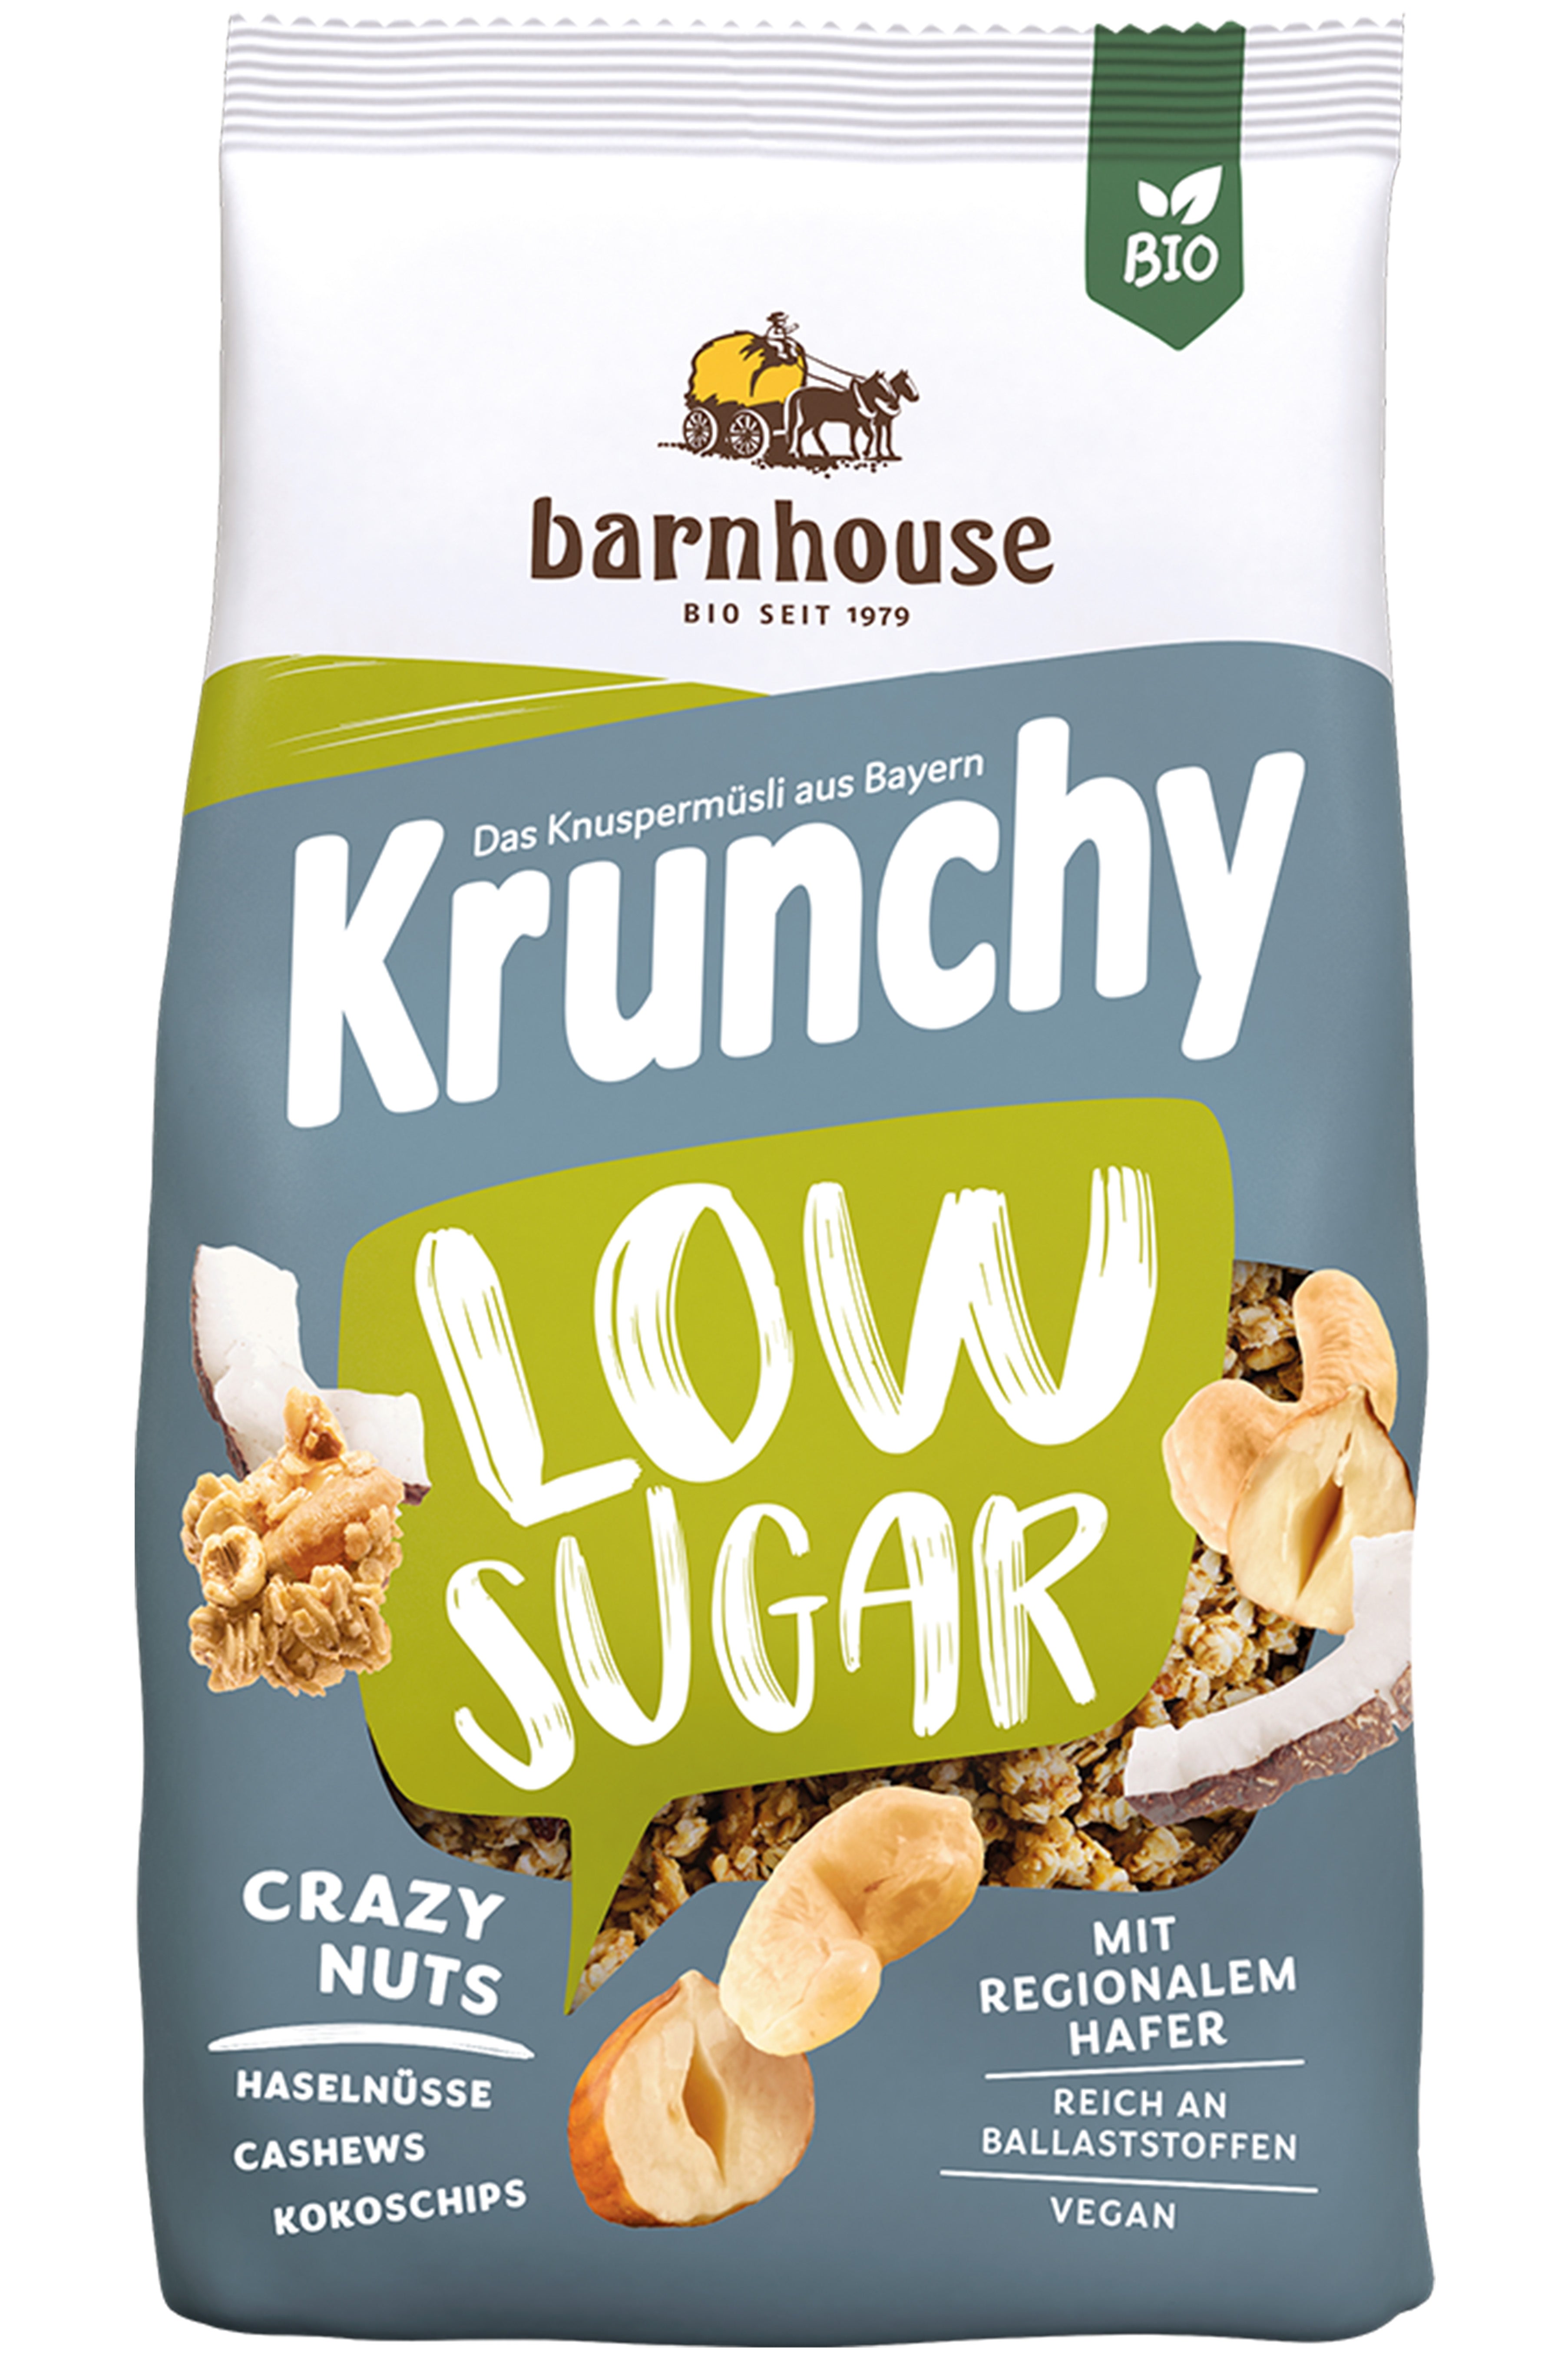 Krunchy Low Sugar Crazy Nuts